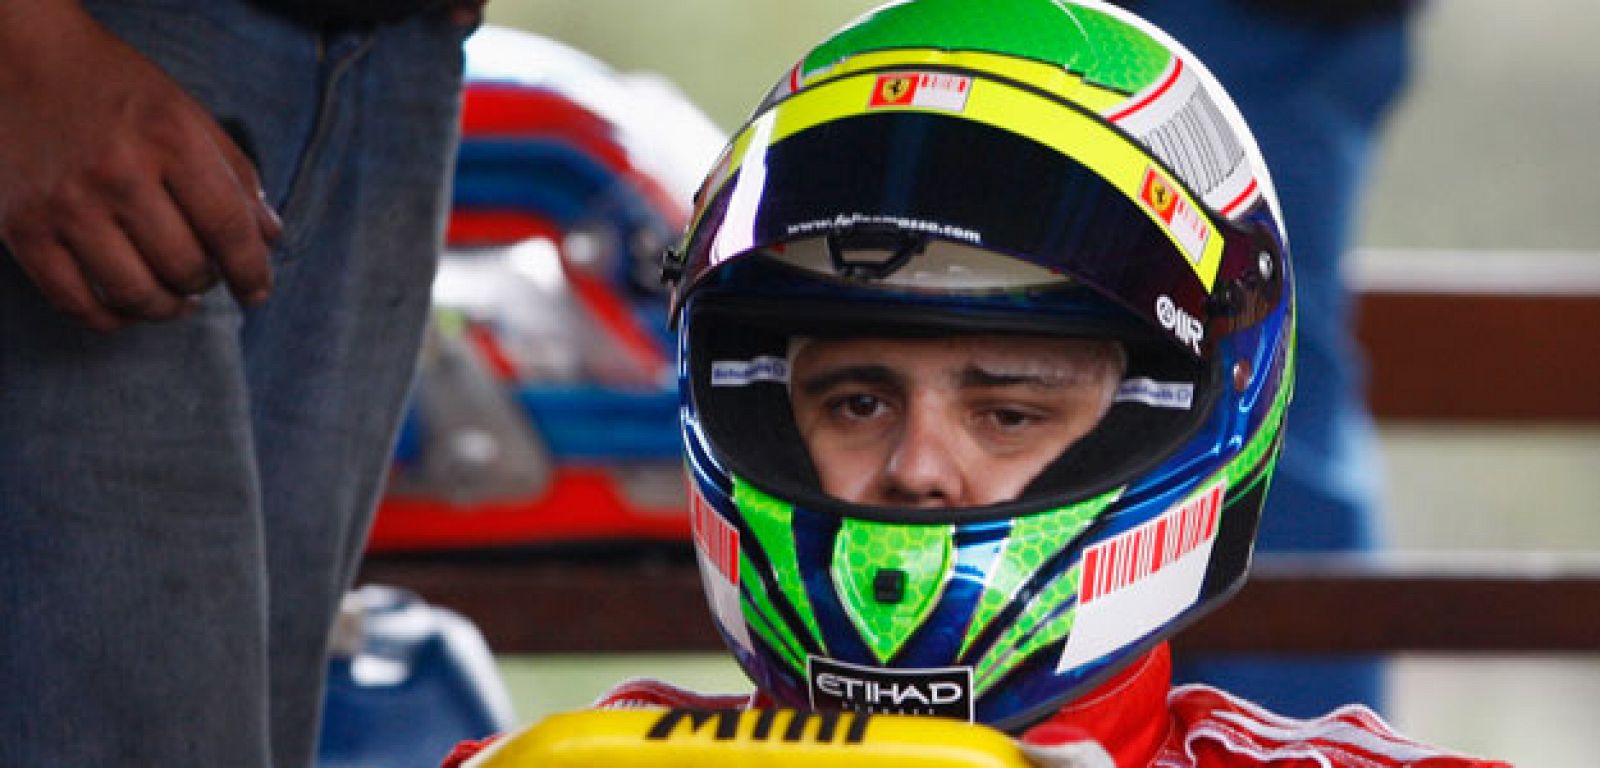 Massa durante sus entrenamientos en Kart para ponerse a punto.